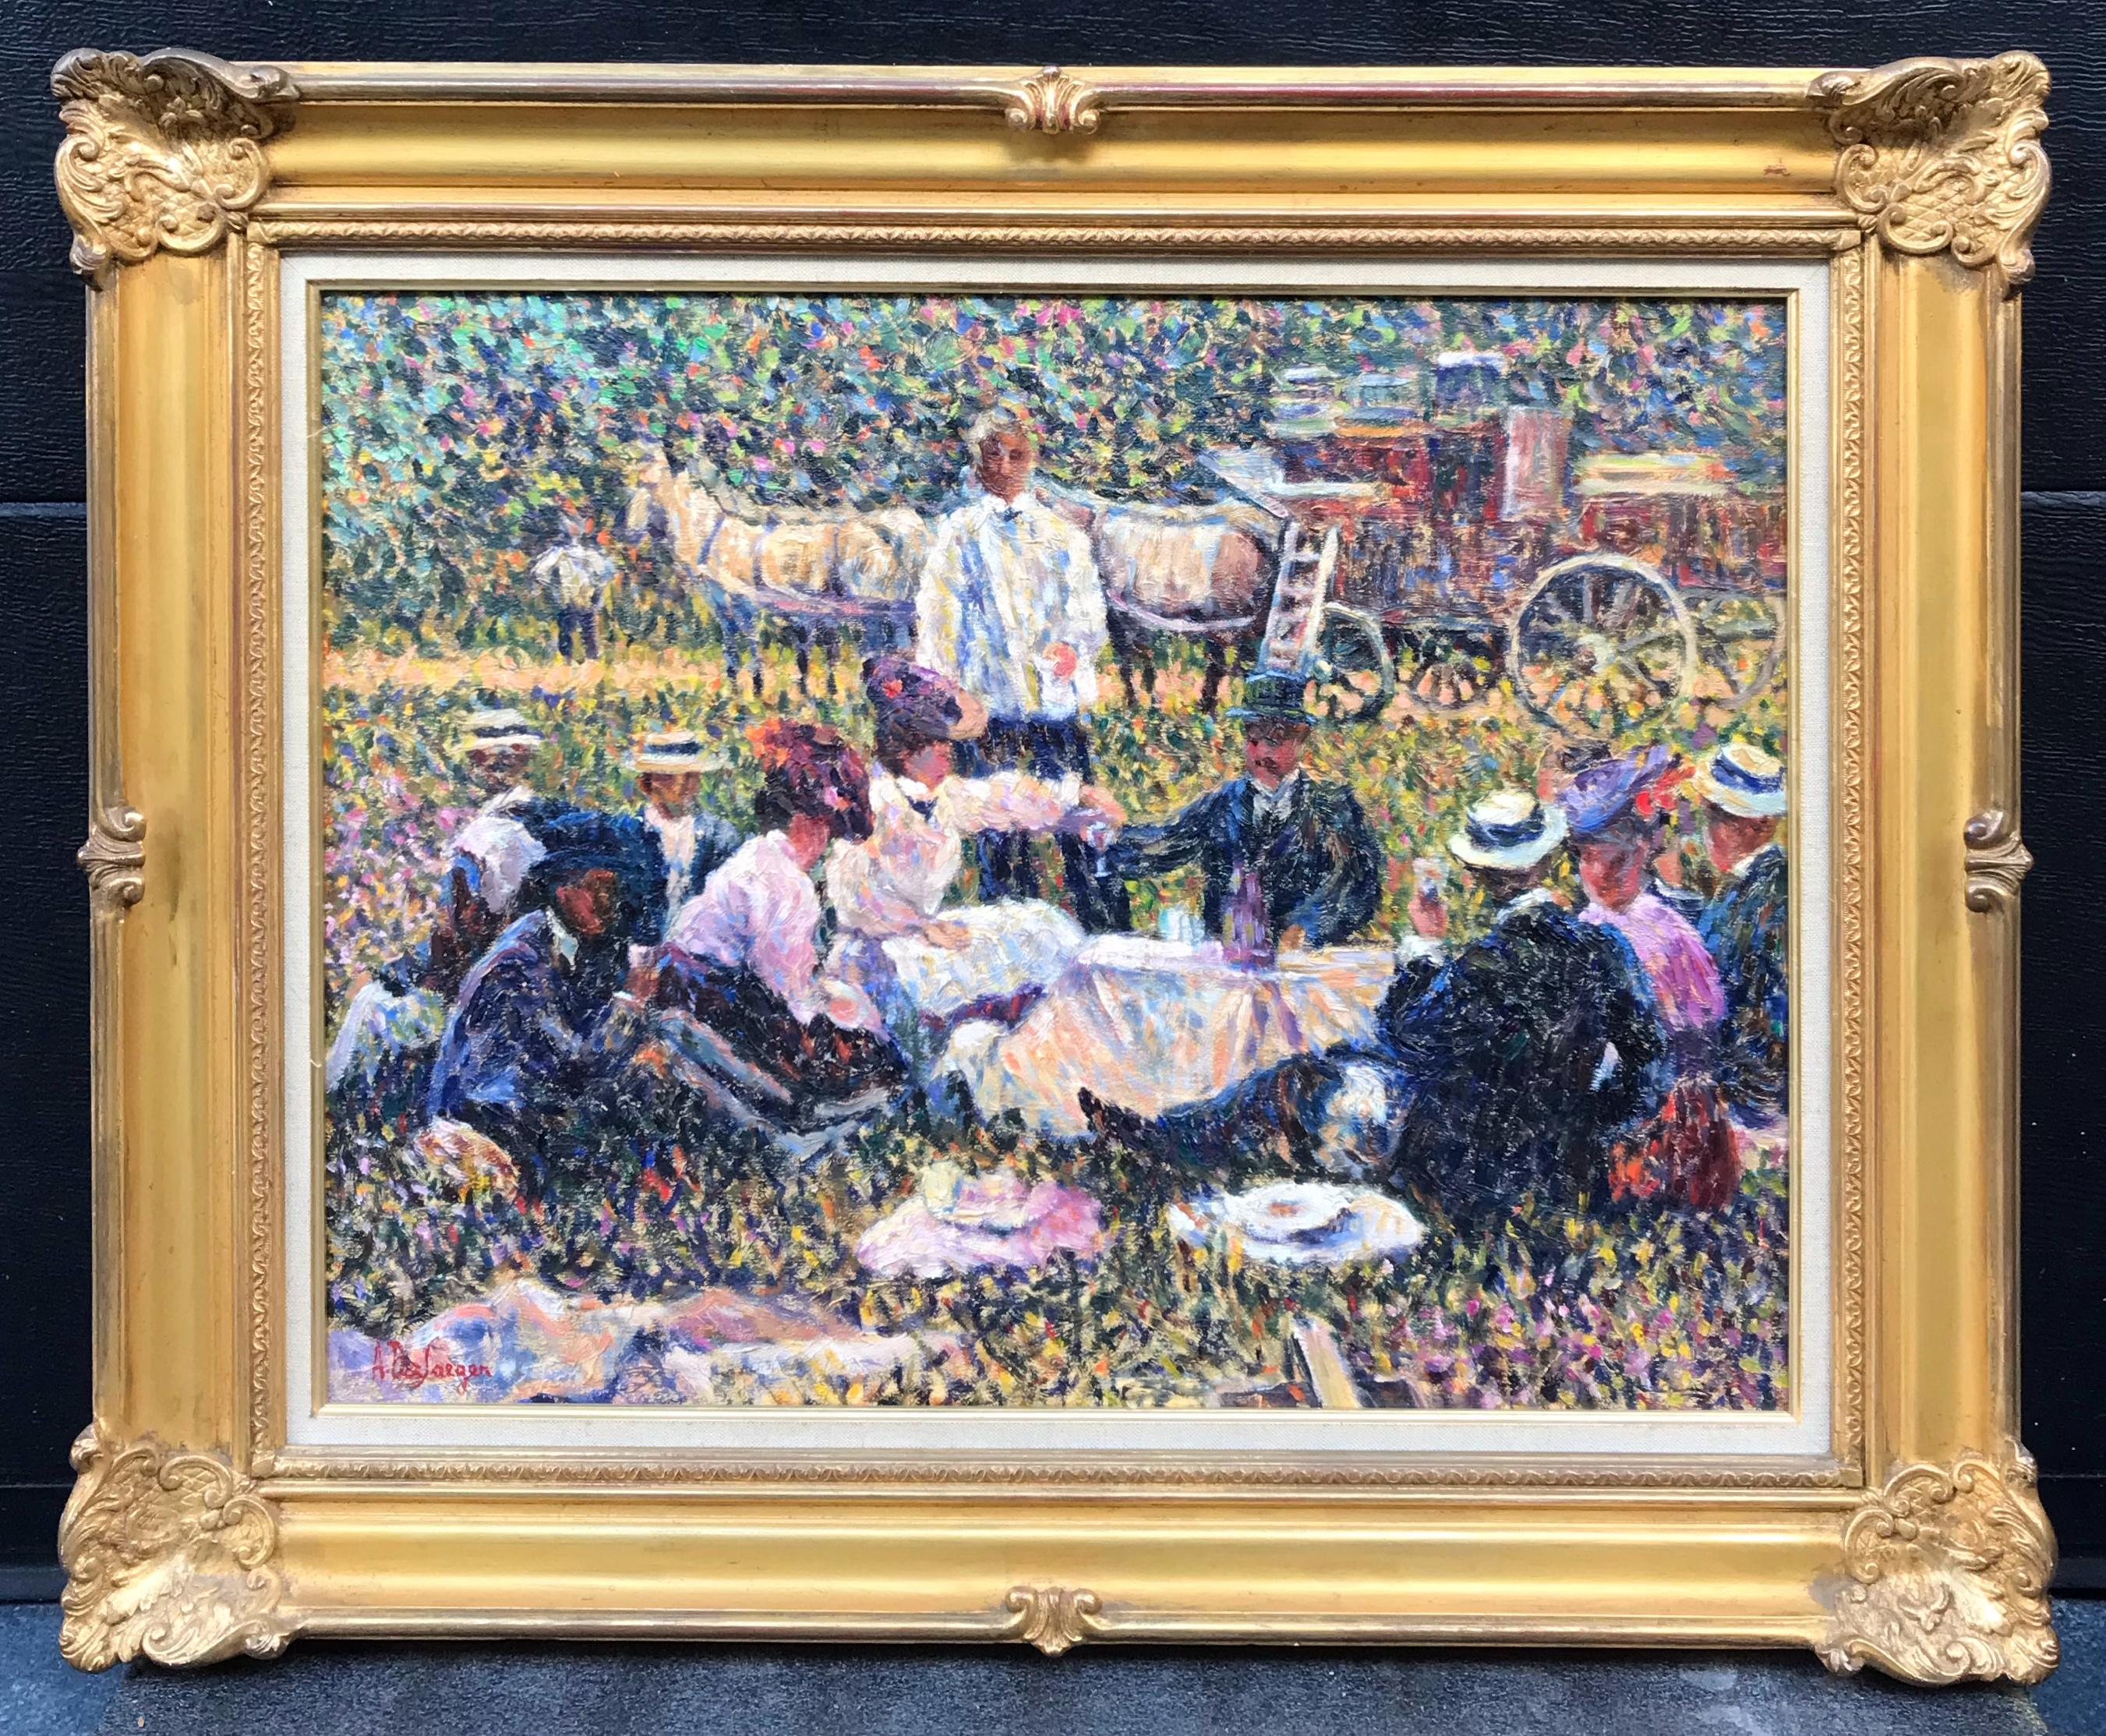 Lunch On The Grass – Postimpressionistisches Gemälde